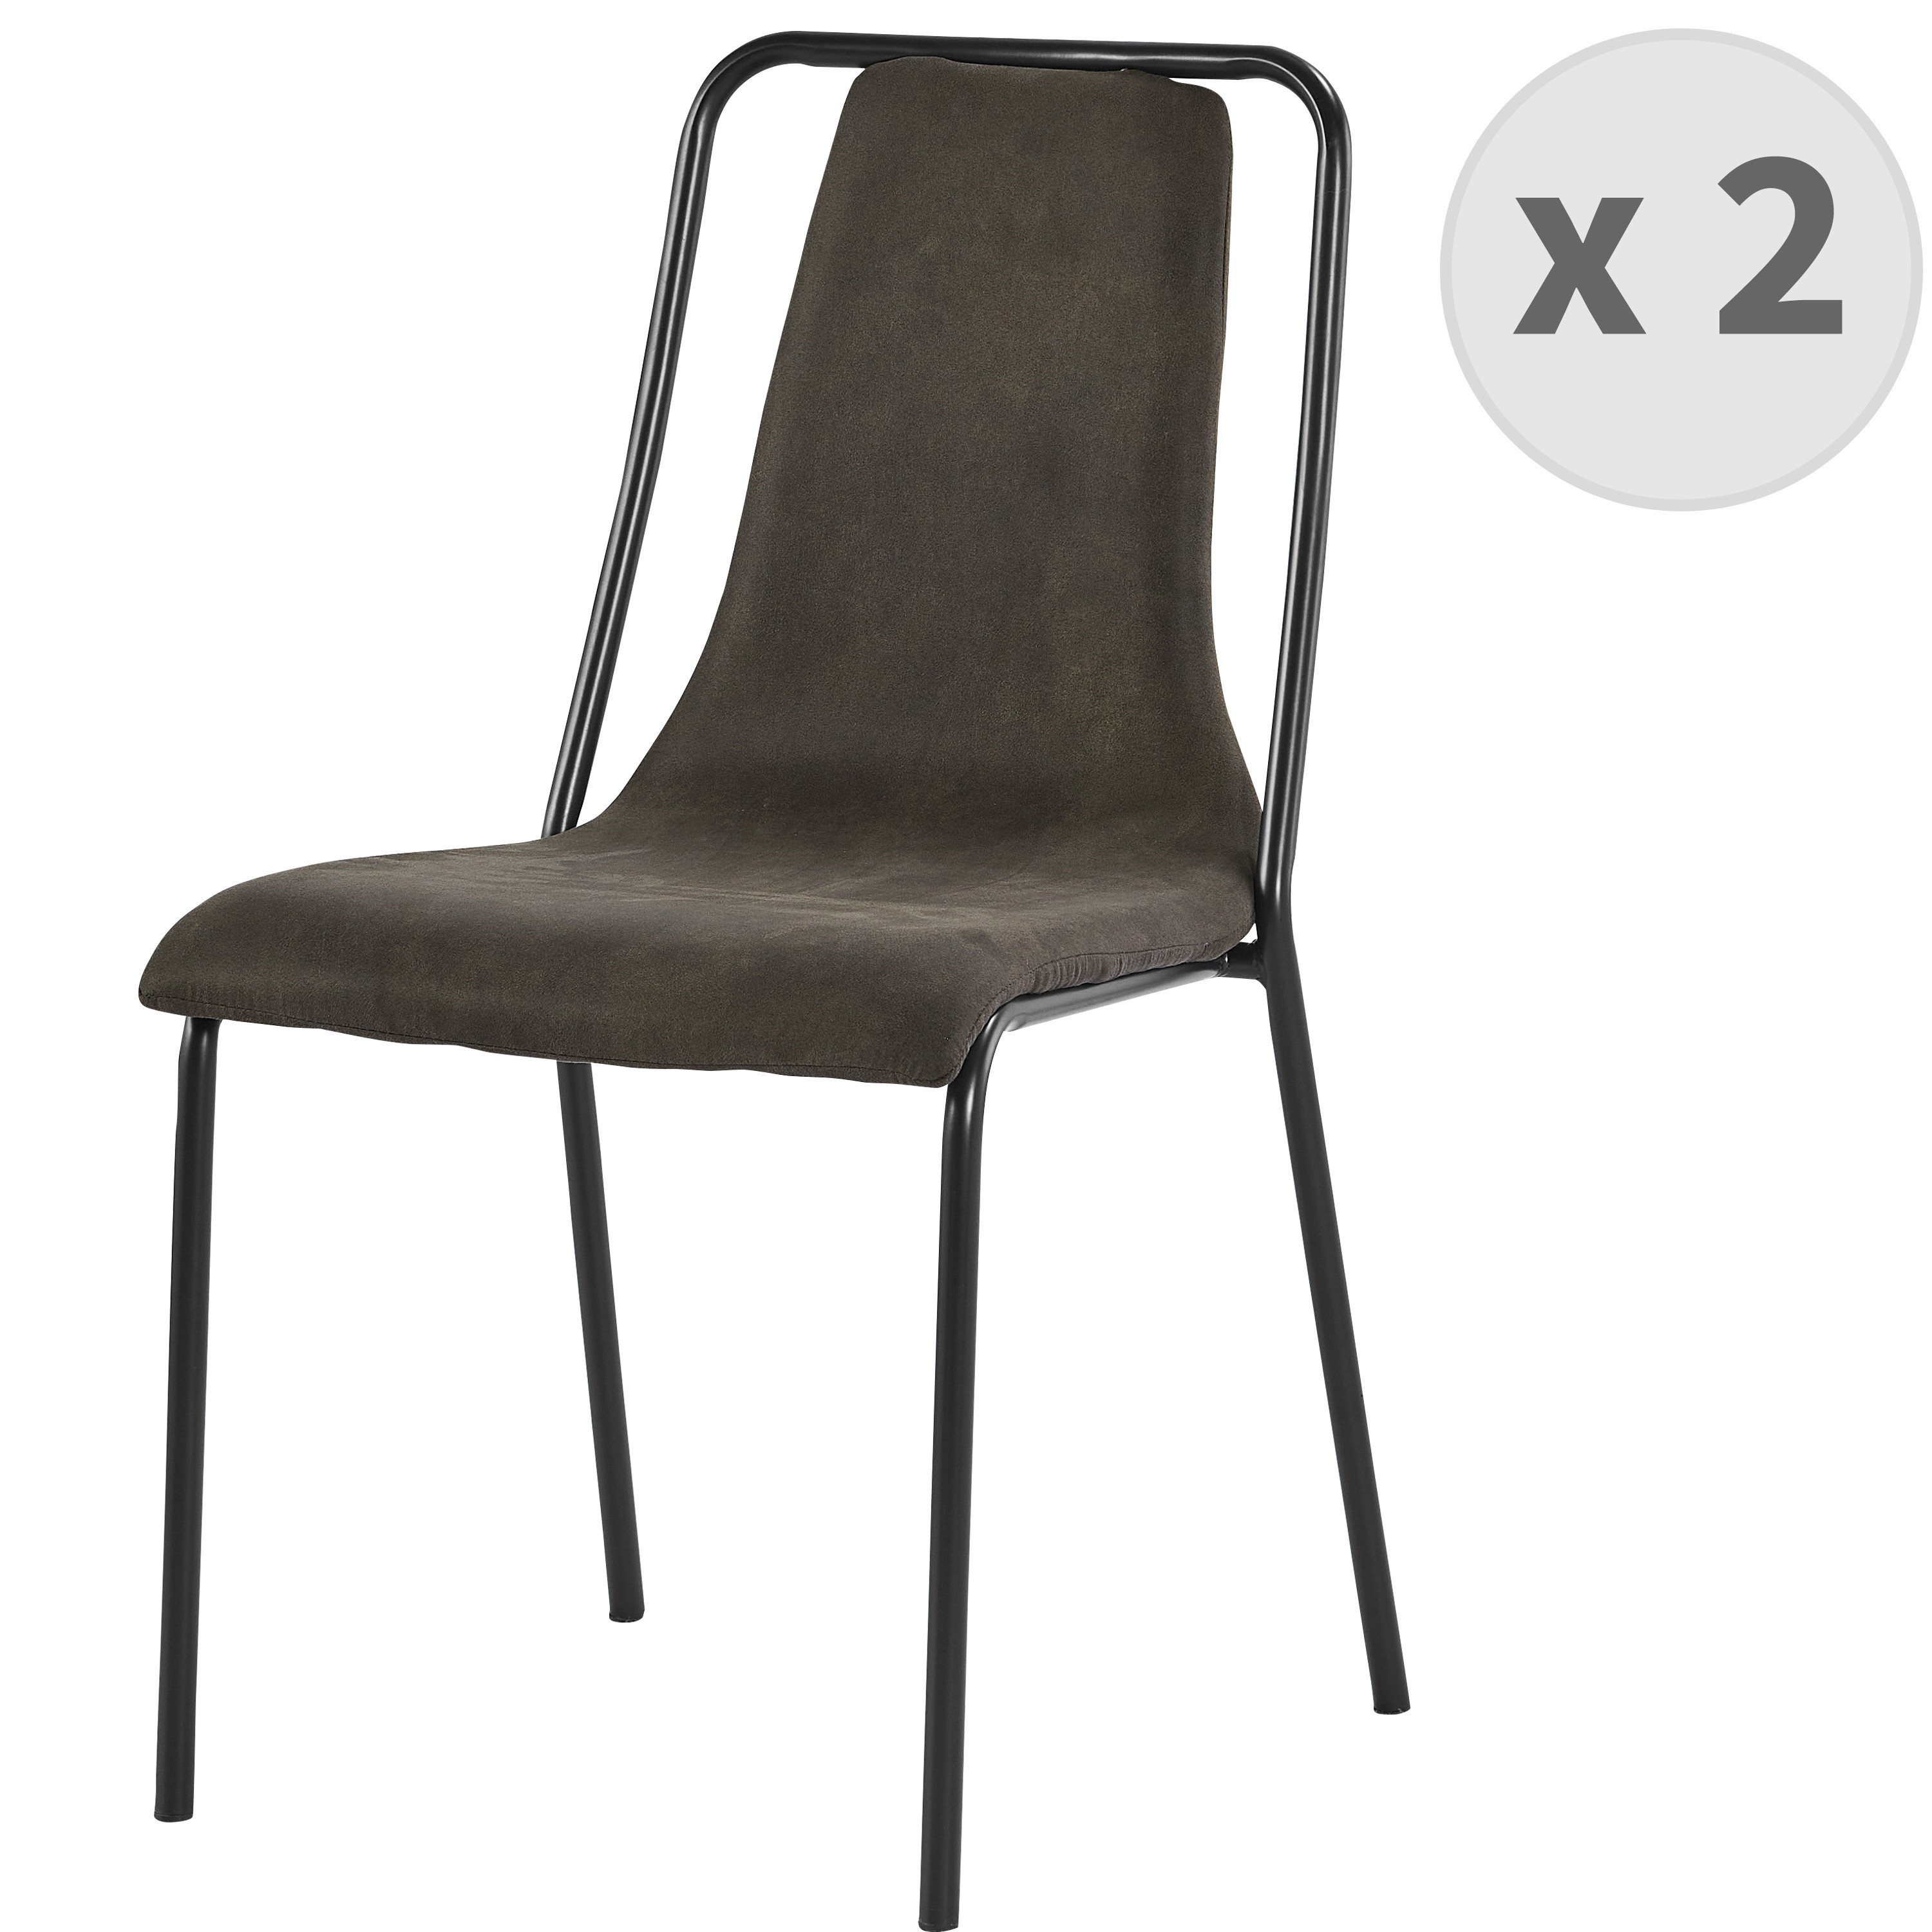 Chaise industrielle vintage marron foncé pieds métal noir (x2)